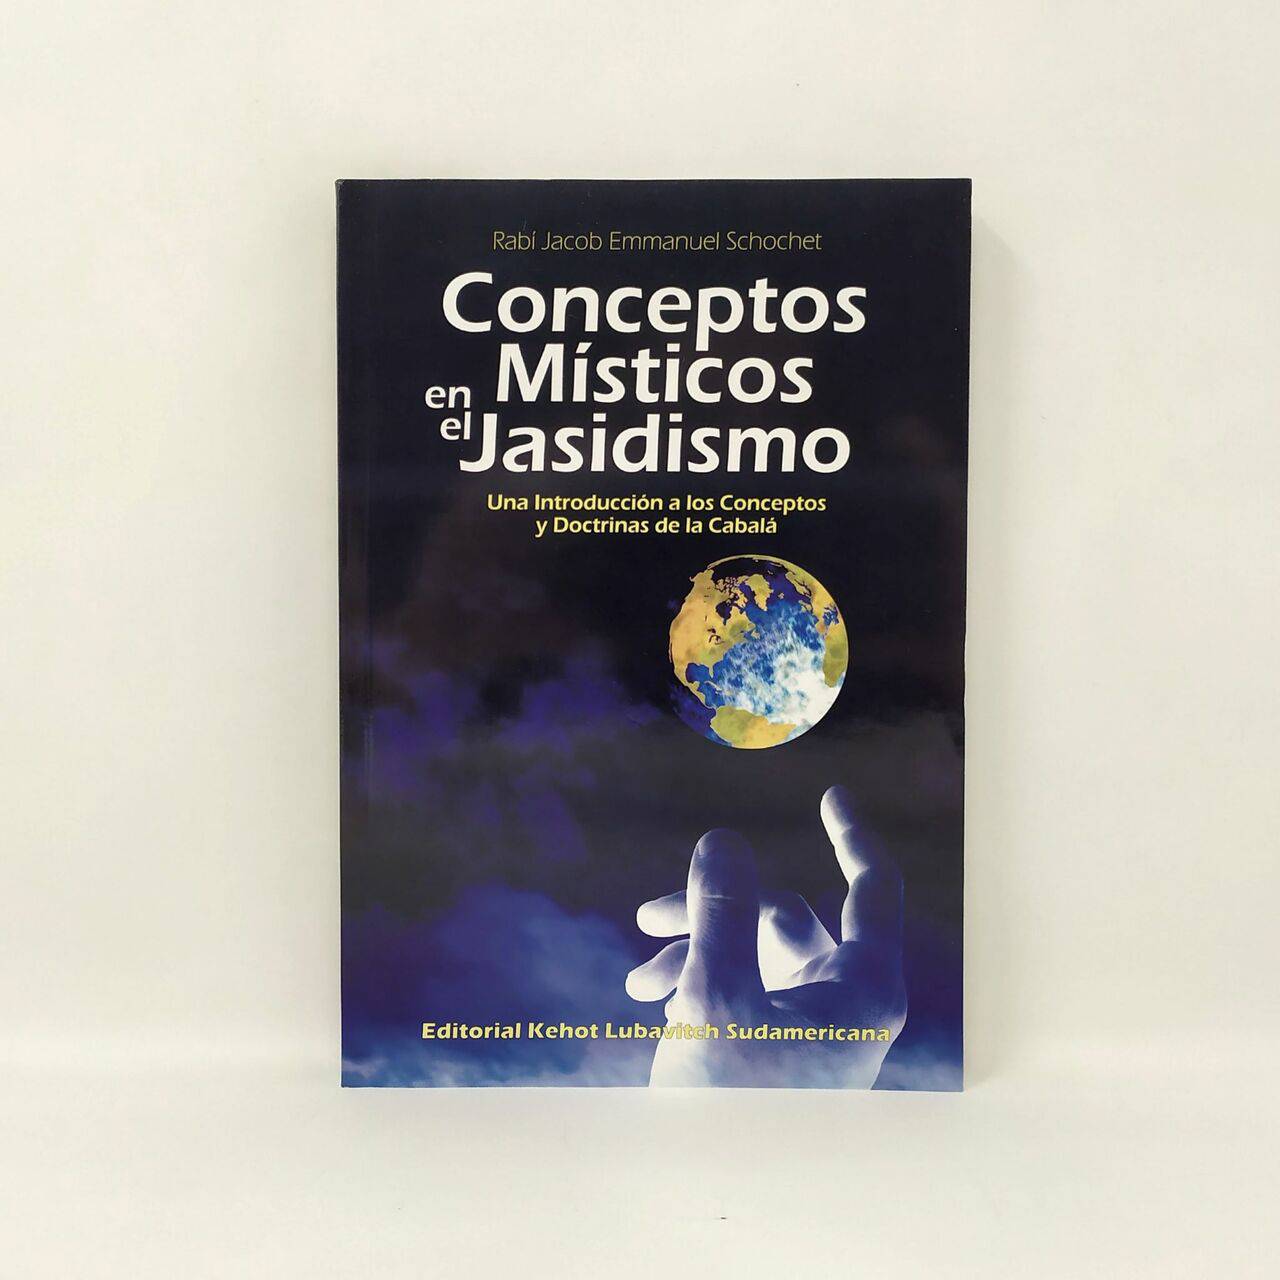 Conceptos místicos en el jasidismo - Libreria Jerusalem Centro